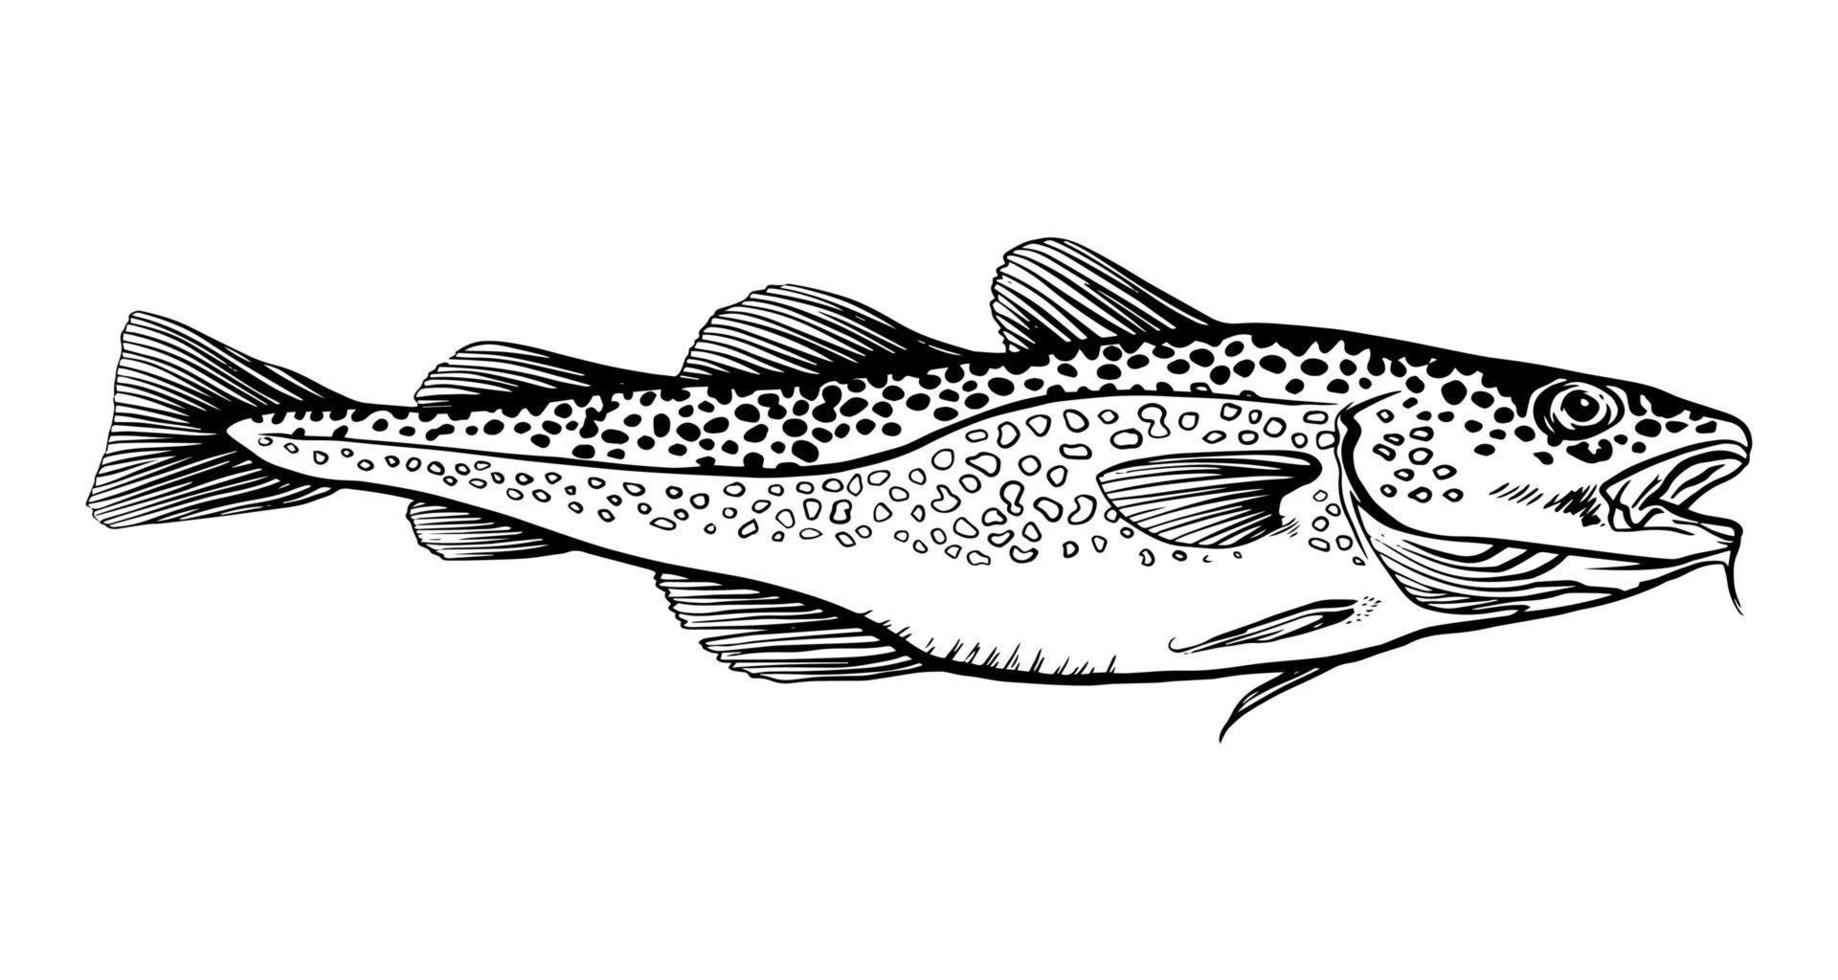 bläck hand dragen vektor illustration av torsk fisk, gadus morhua, på vit bakgrund